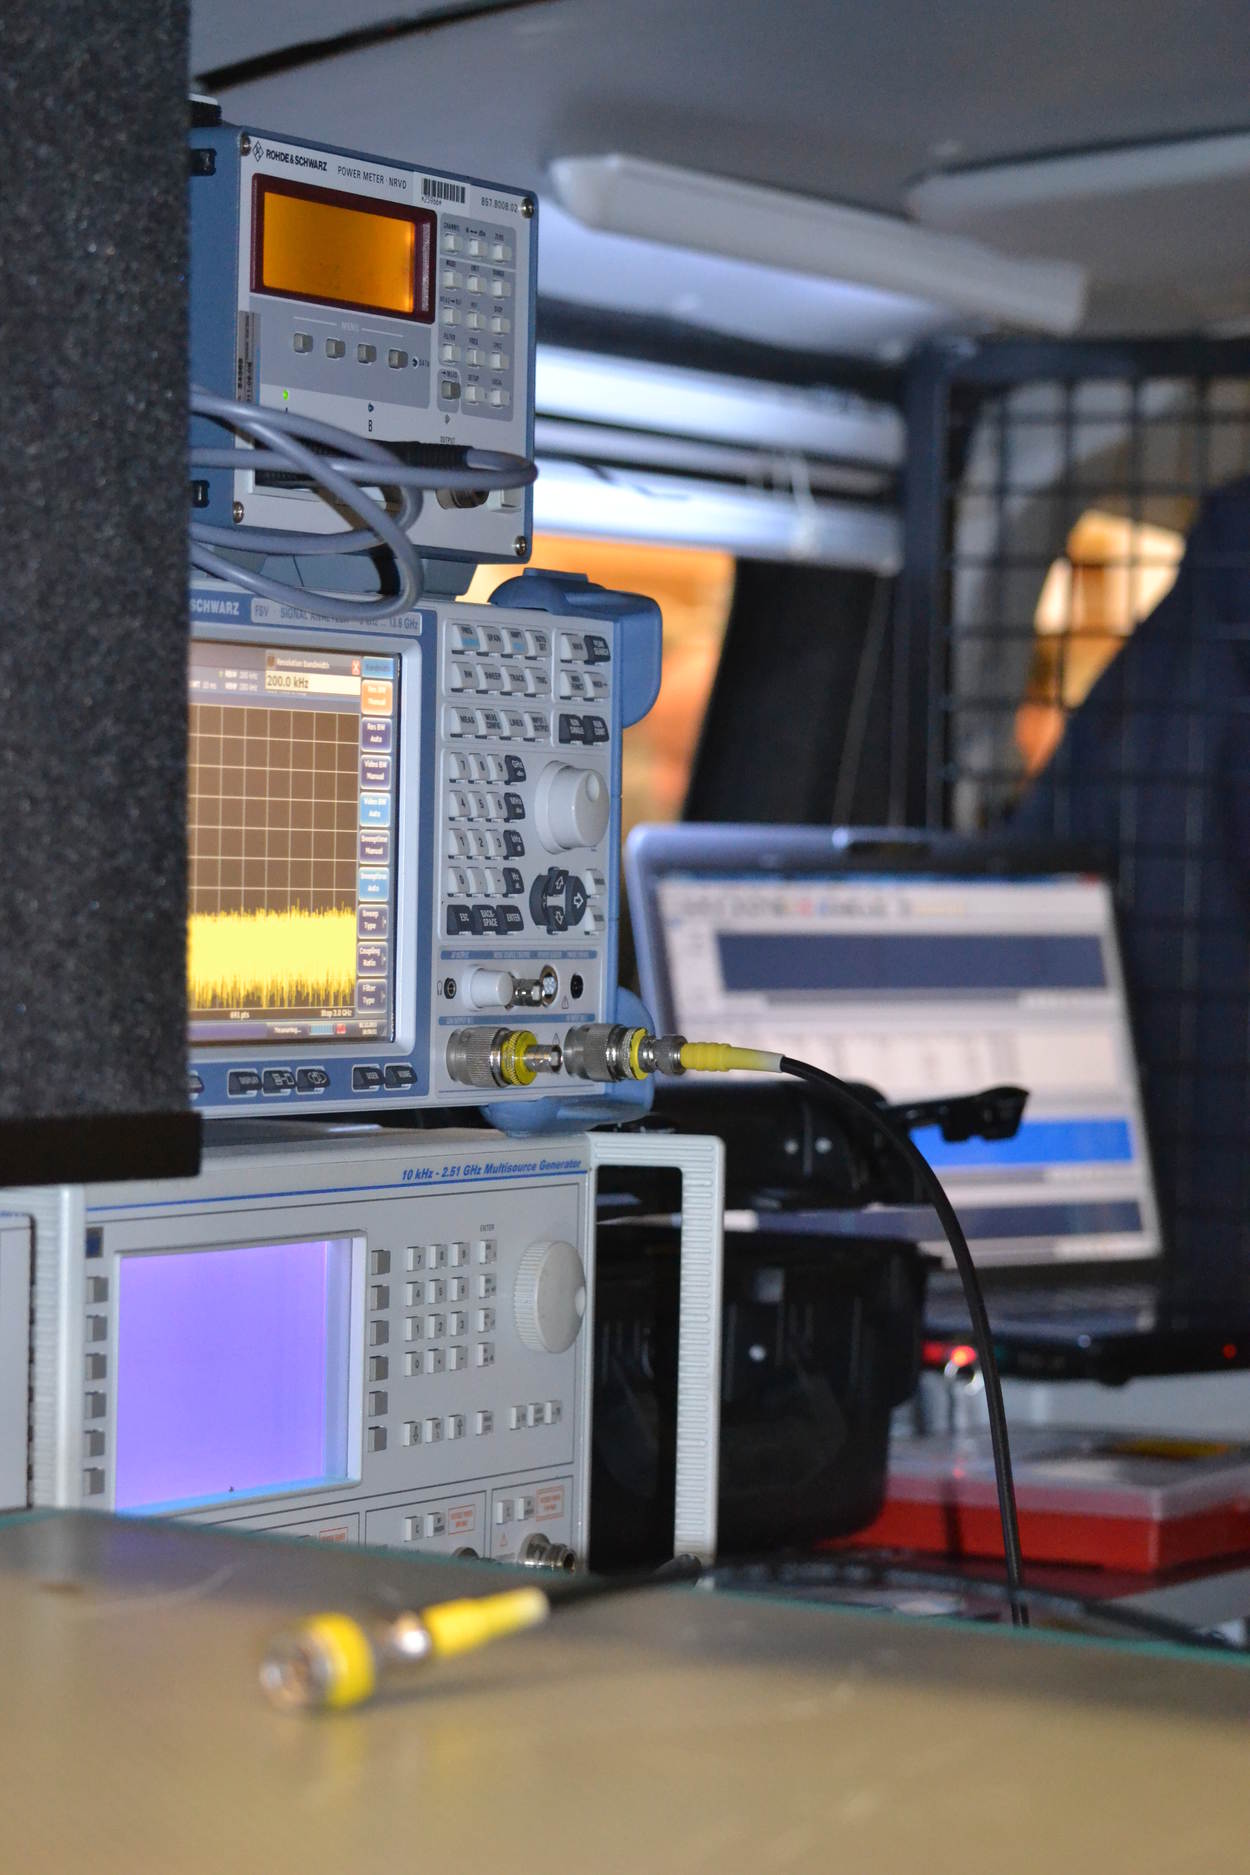 Apparatuur in de inspectiebus waarmee Agentschap Telecom controles uitvoert